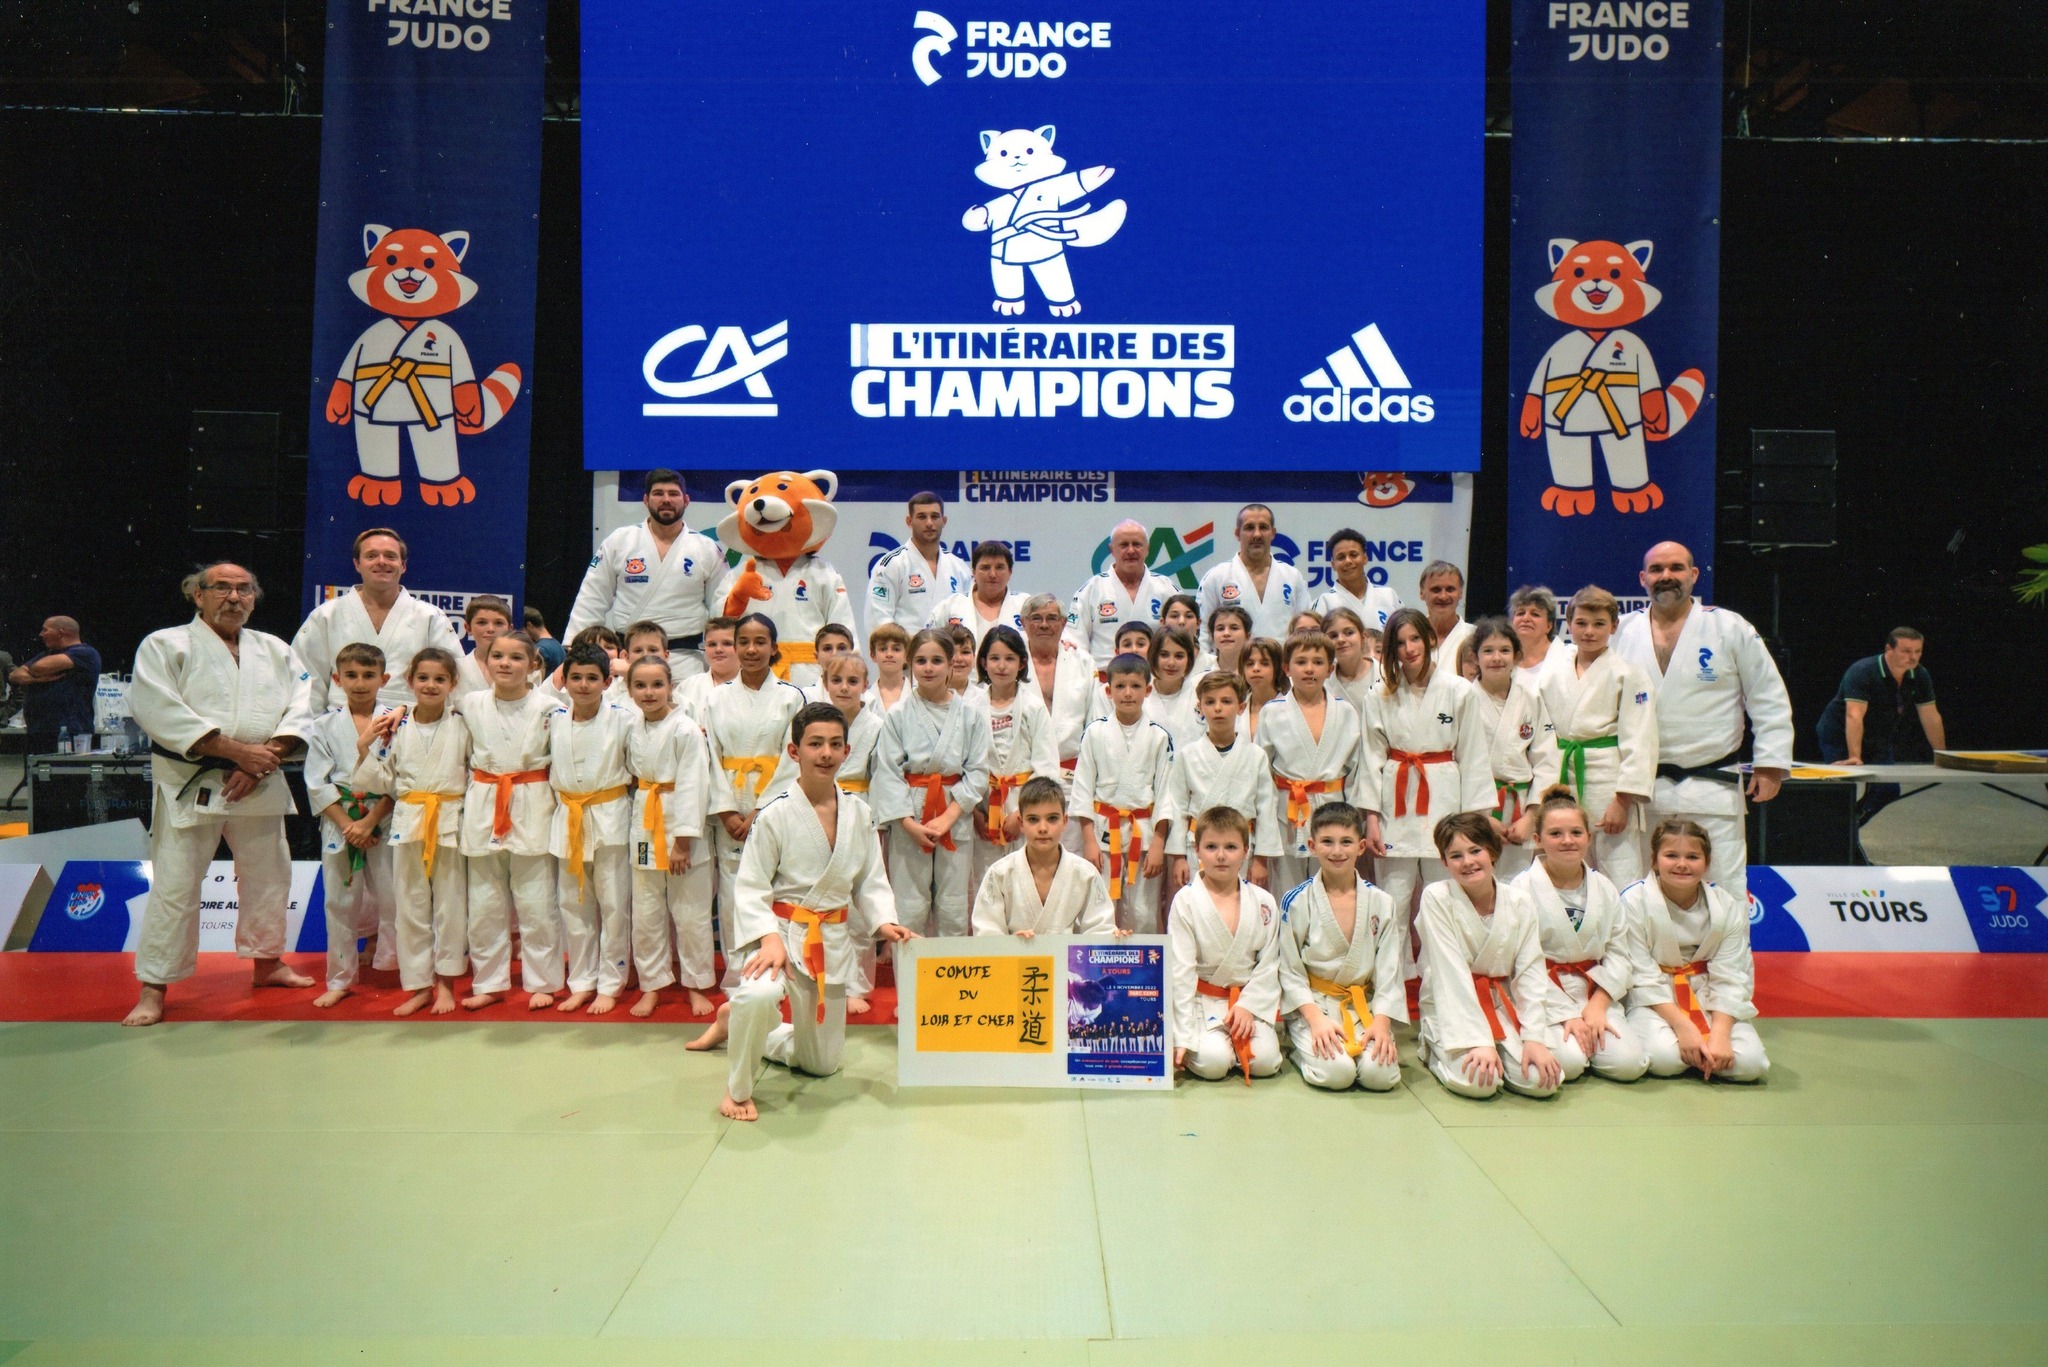 Les Judoka du 41, le Mercredi 9 Novembre 2022: Itinéraire des Champions France Judo au parc des expositions à Tours